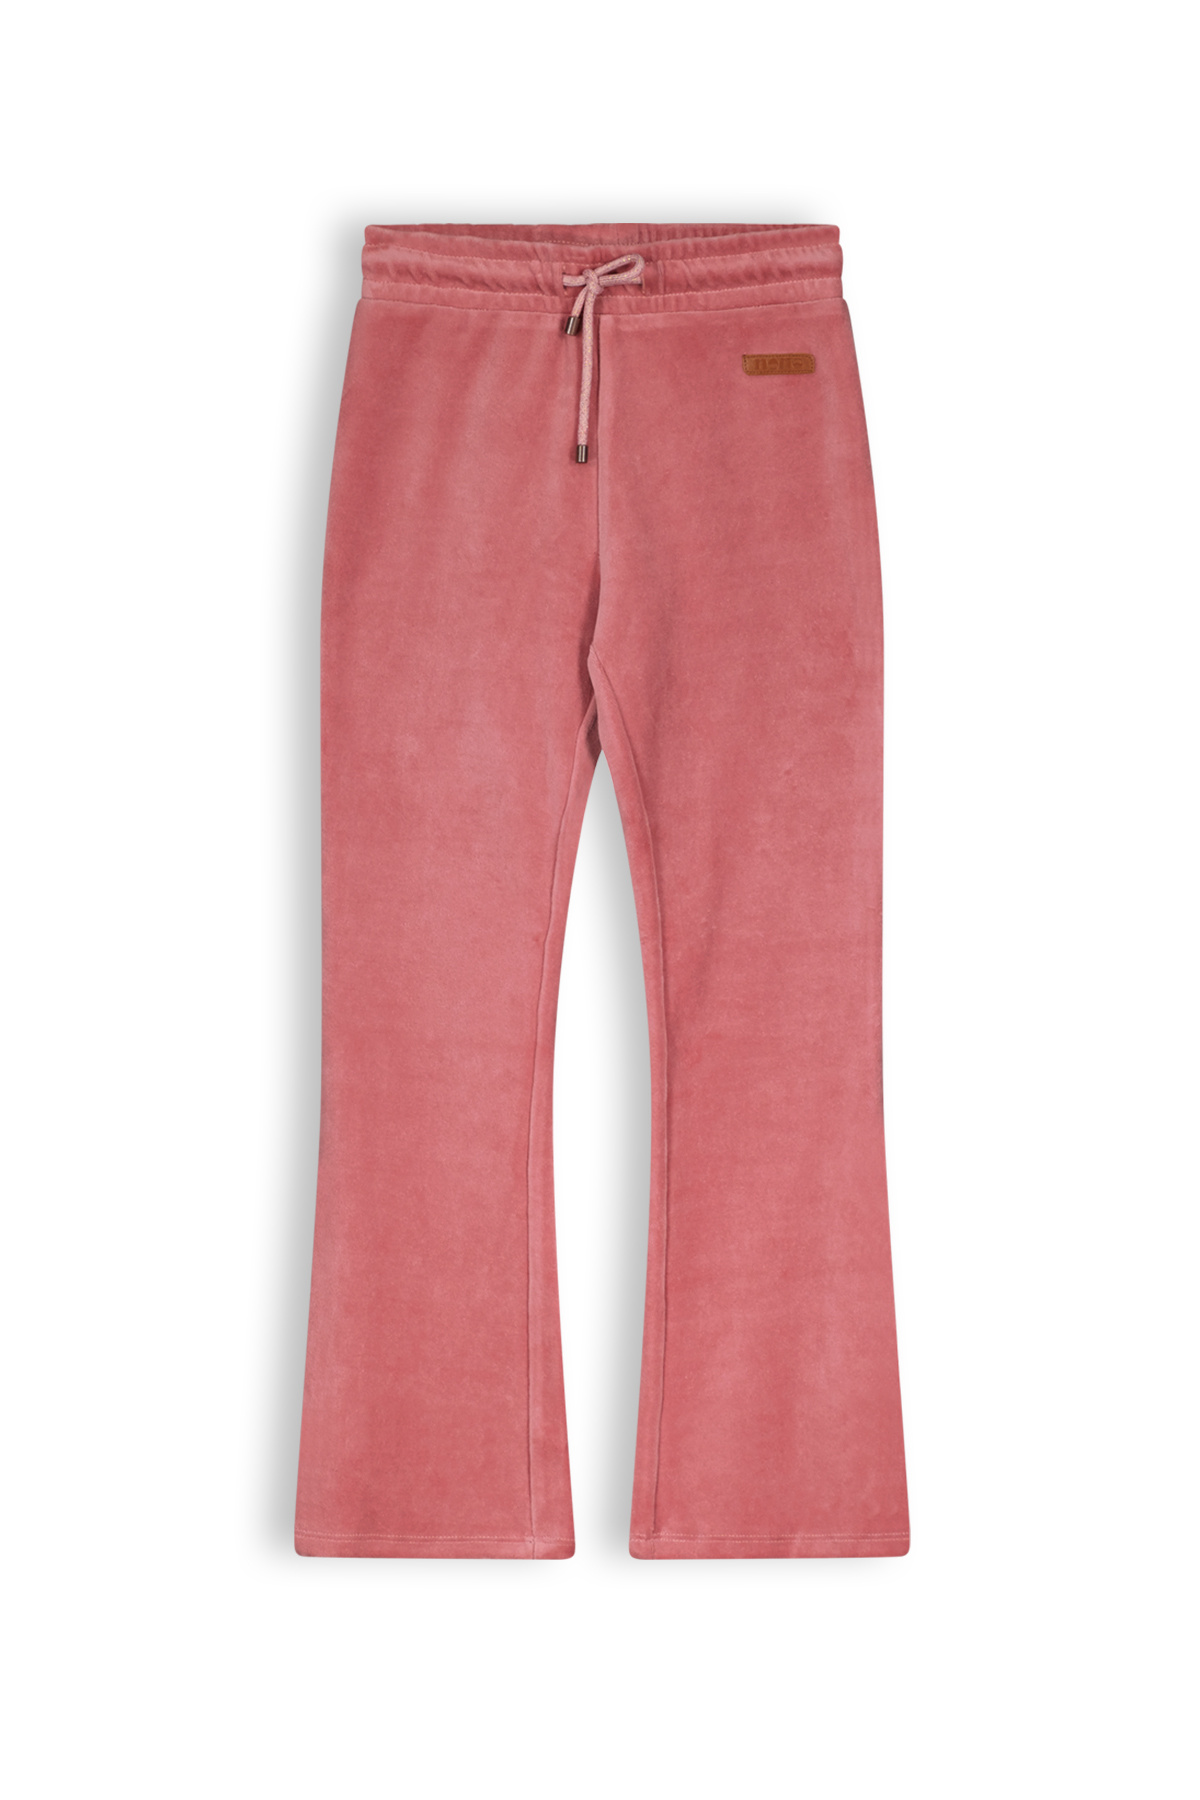 NONO - Lange broek - Sunset Pink - Maat 146-152